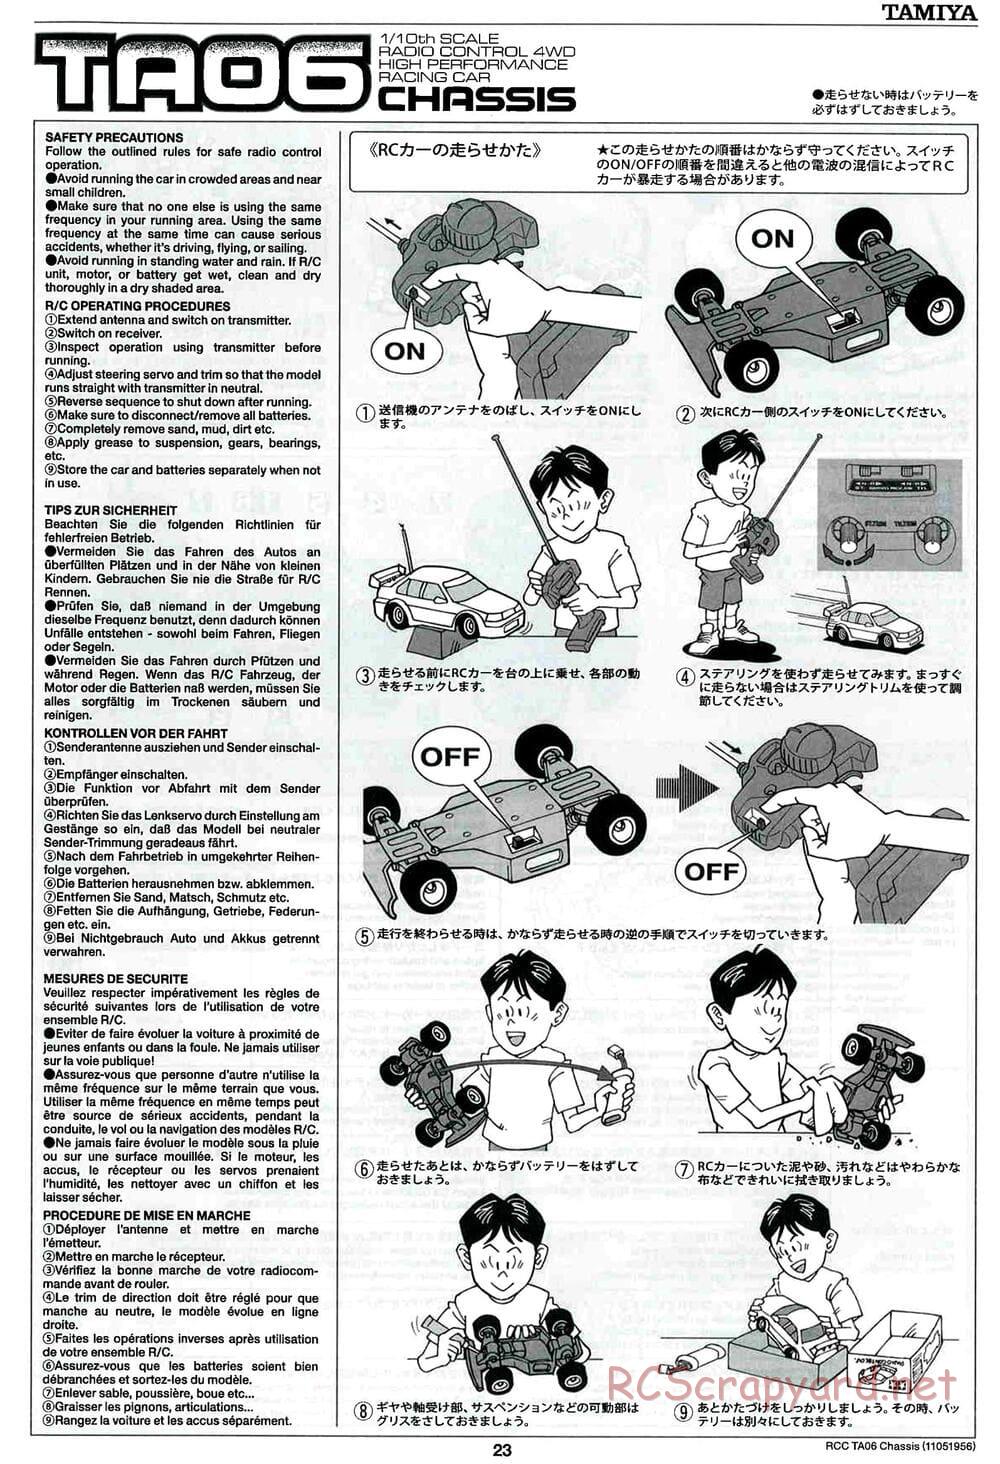 Tamiya - TA06 Chassis - Manual - Page 23